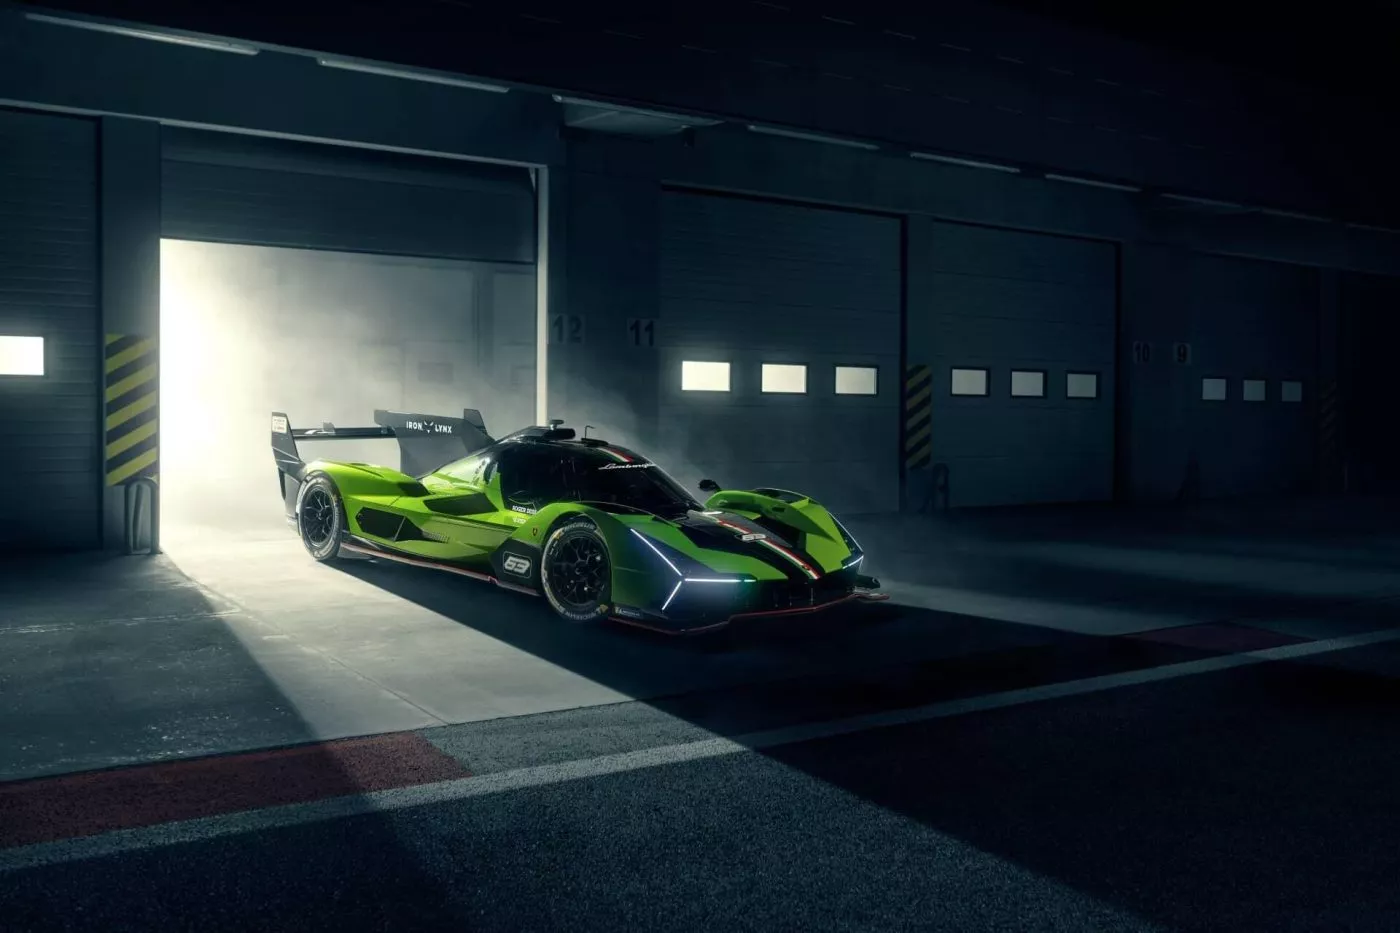 Lamborghini avisa: “Nuestra ambición es ganar, no ser únicamente parte del juego”